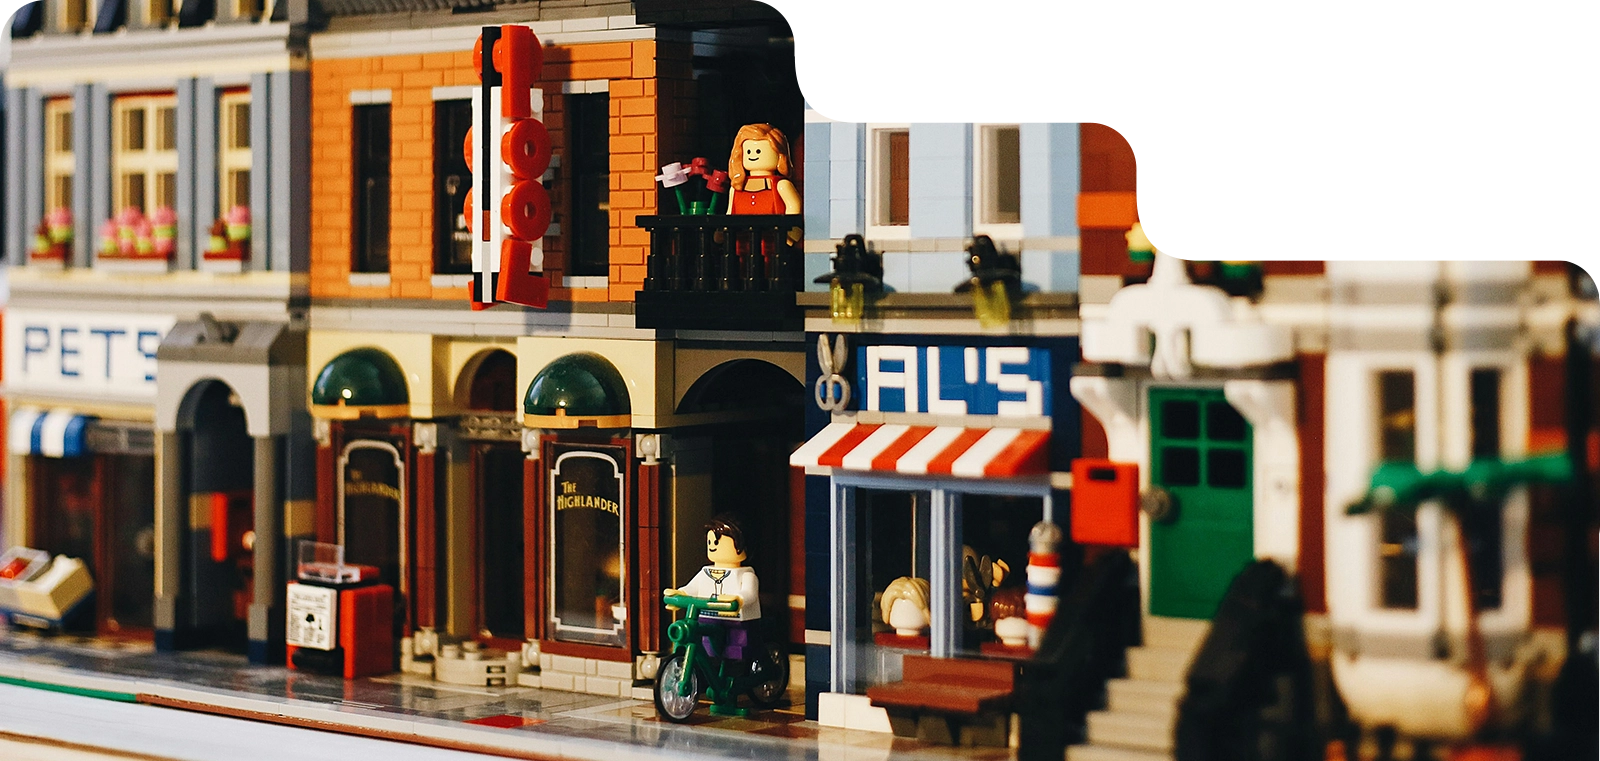 Une scène urbaine détaillée réalisée avec des briques de construction type Lego